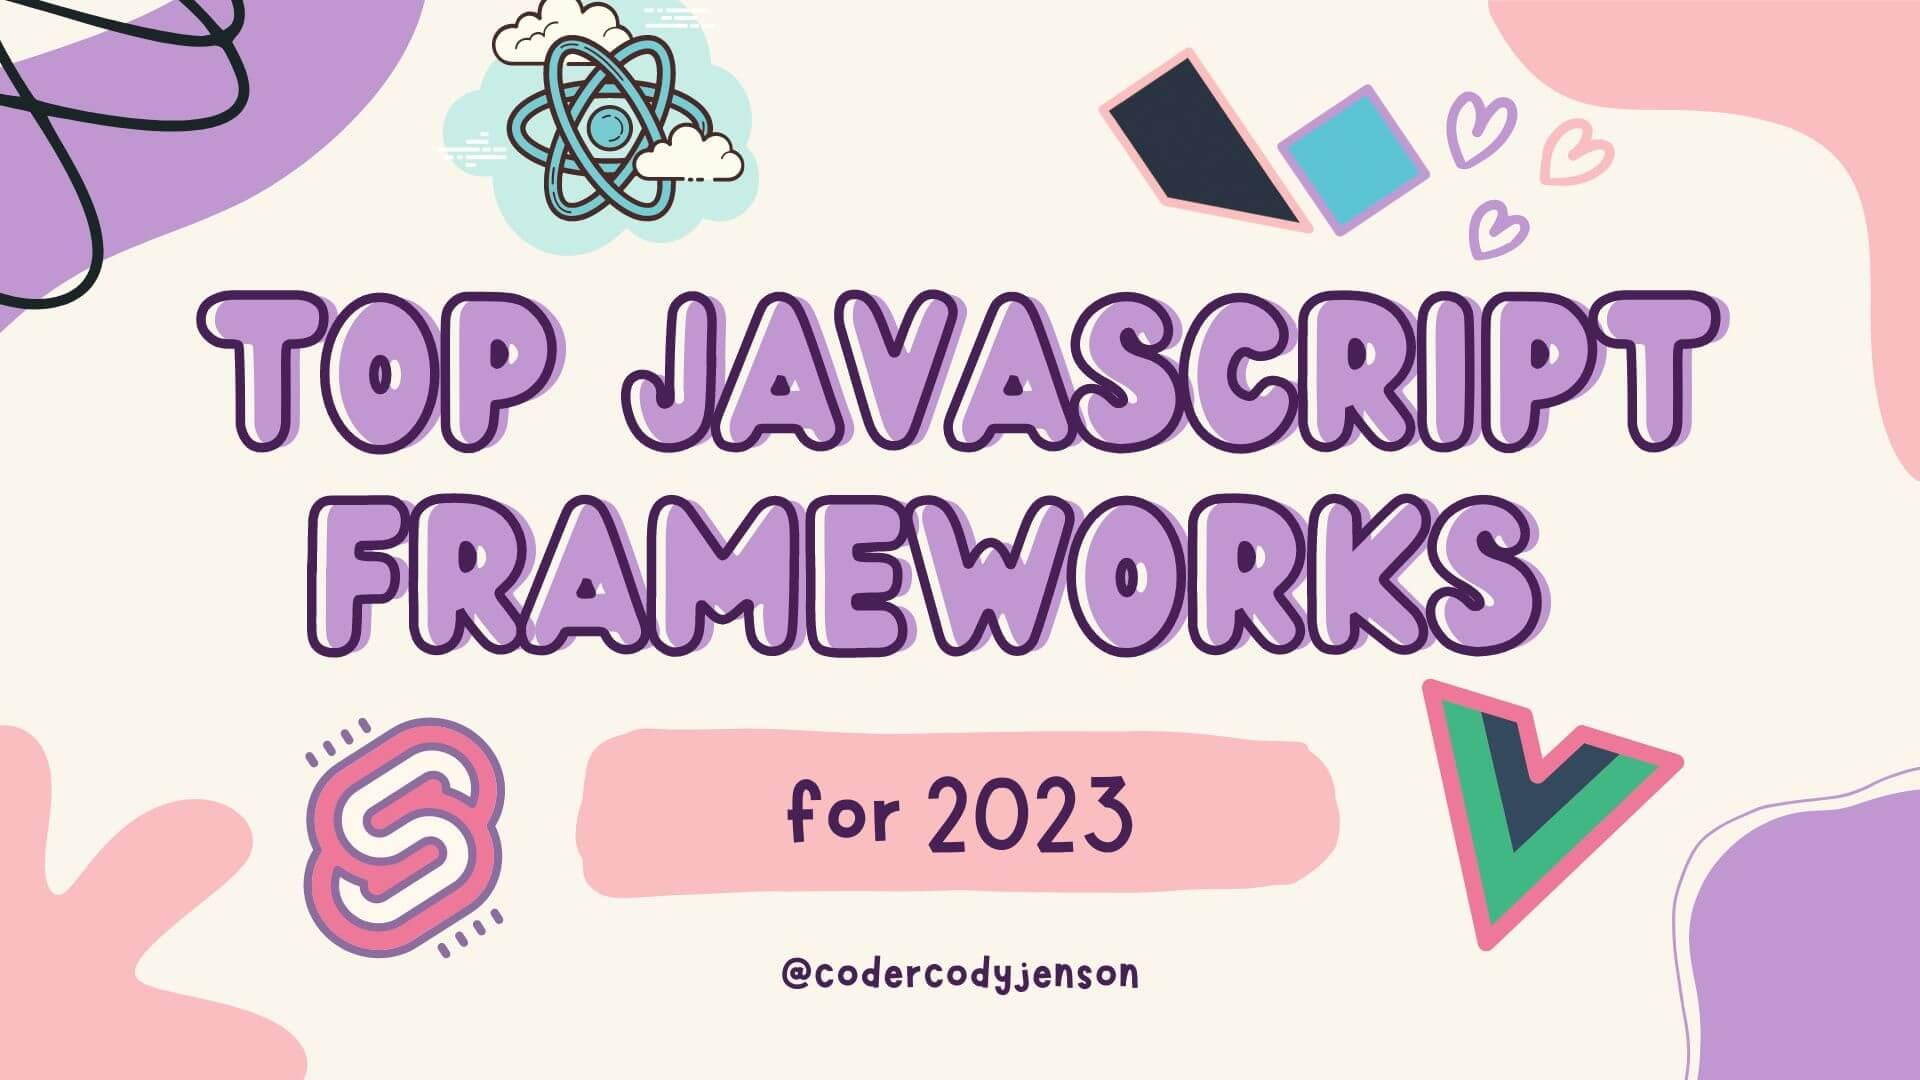 Top Javascript Frameworks for 2023